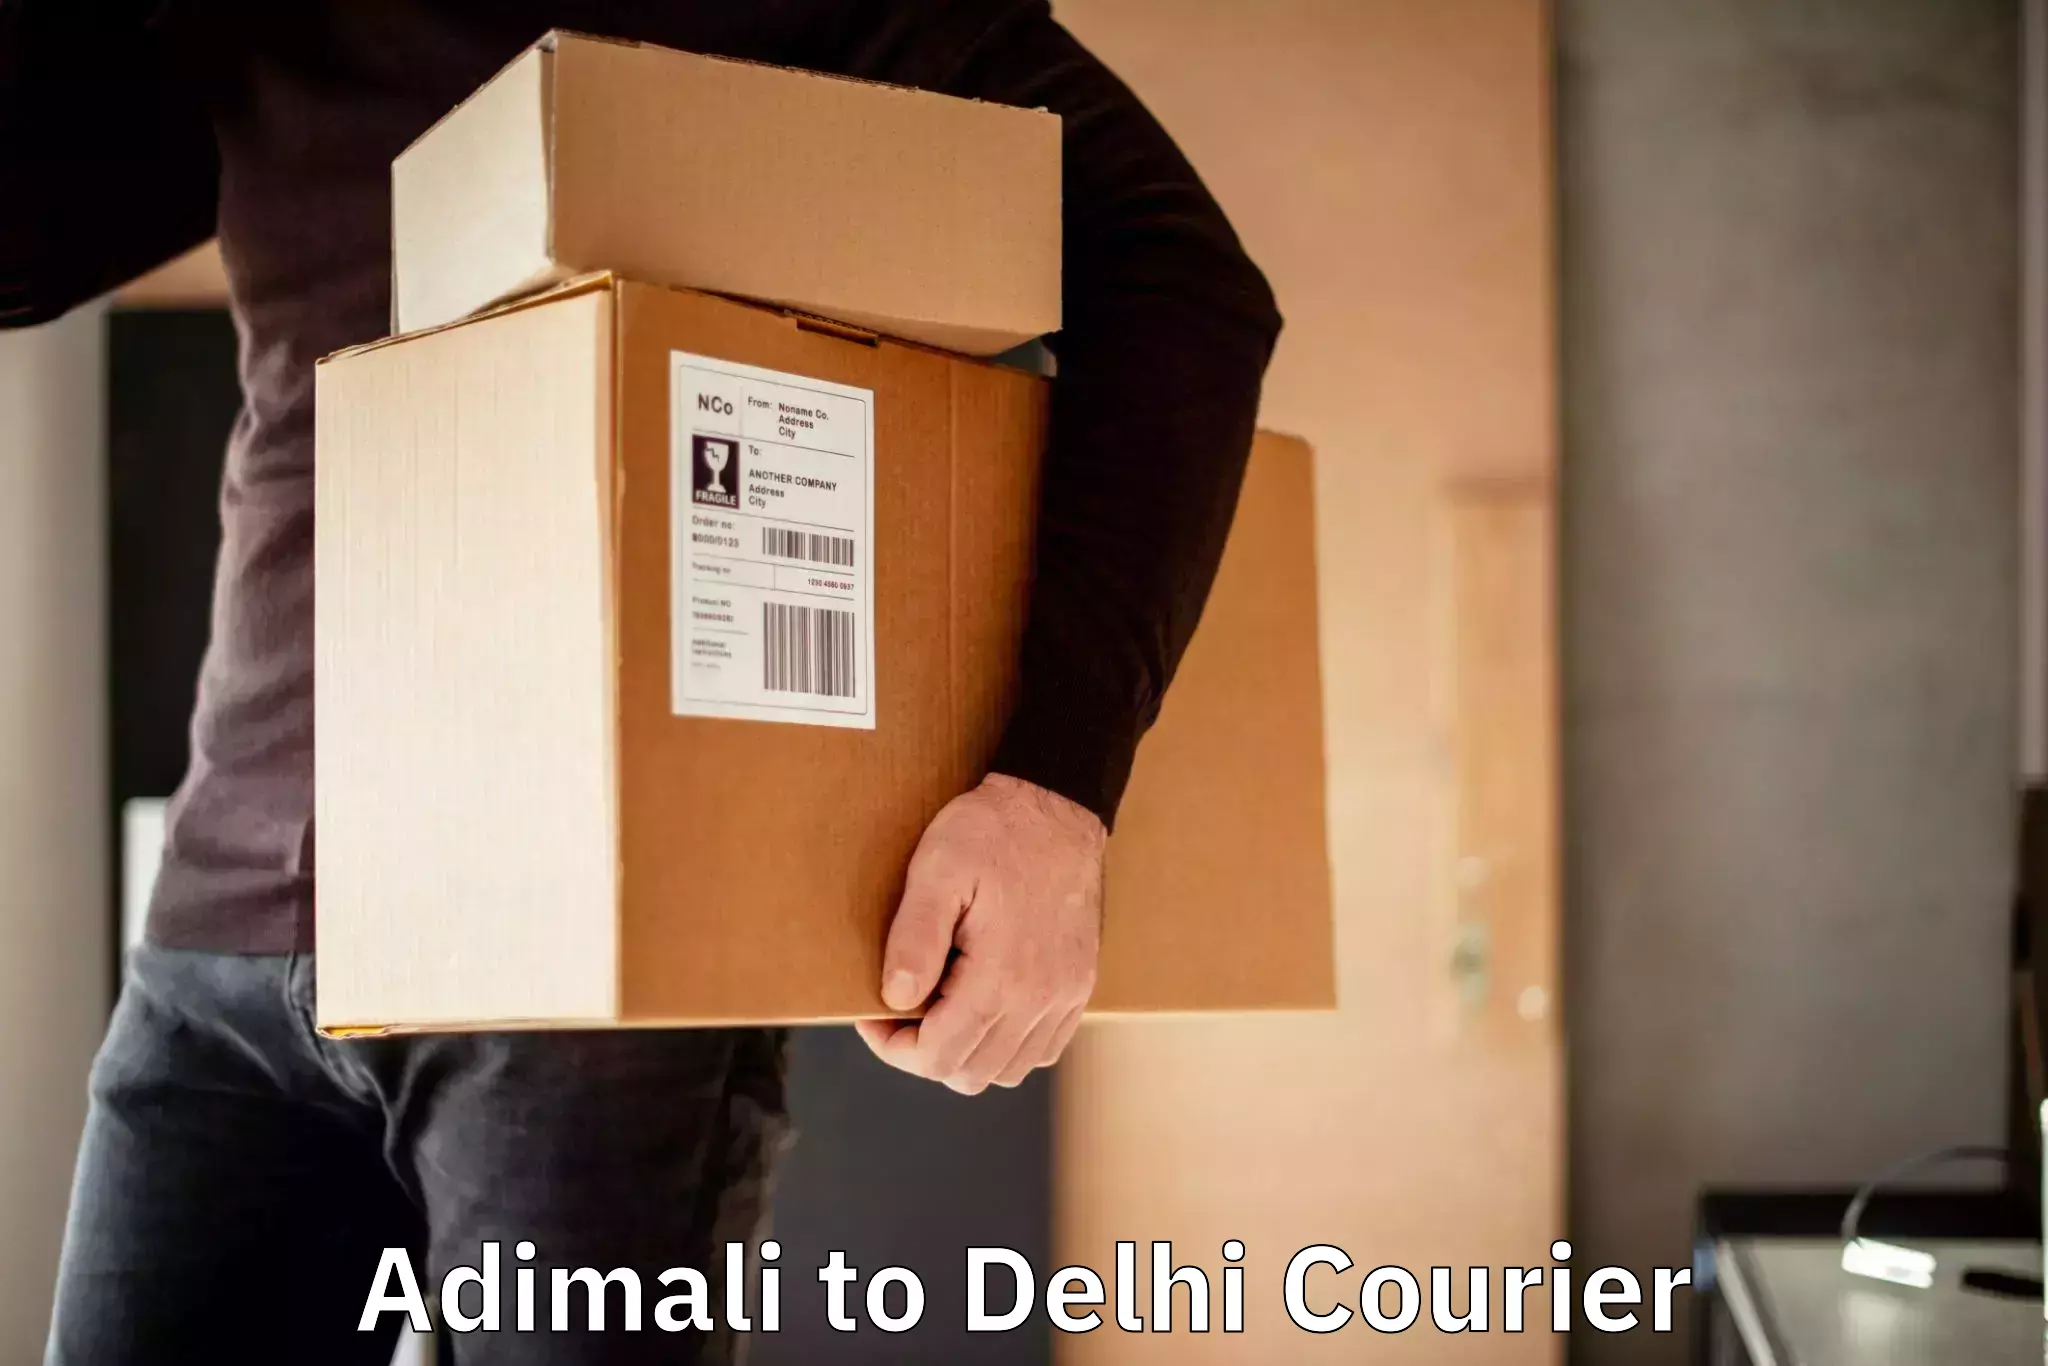 Rapid shipping services Adimali to Delhi